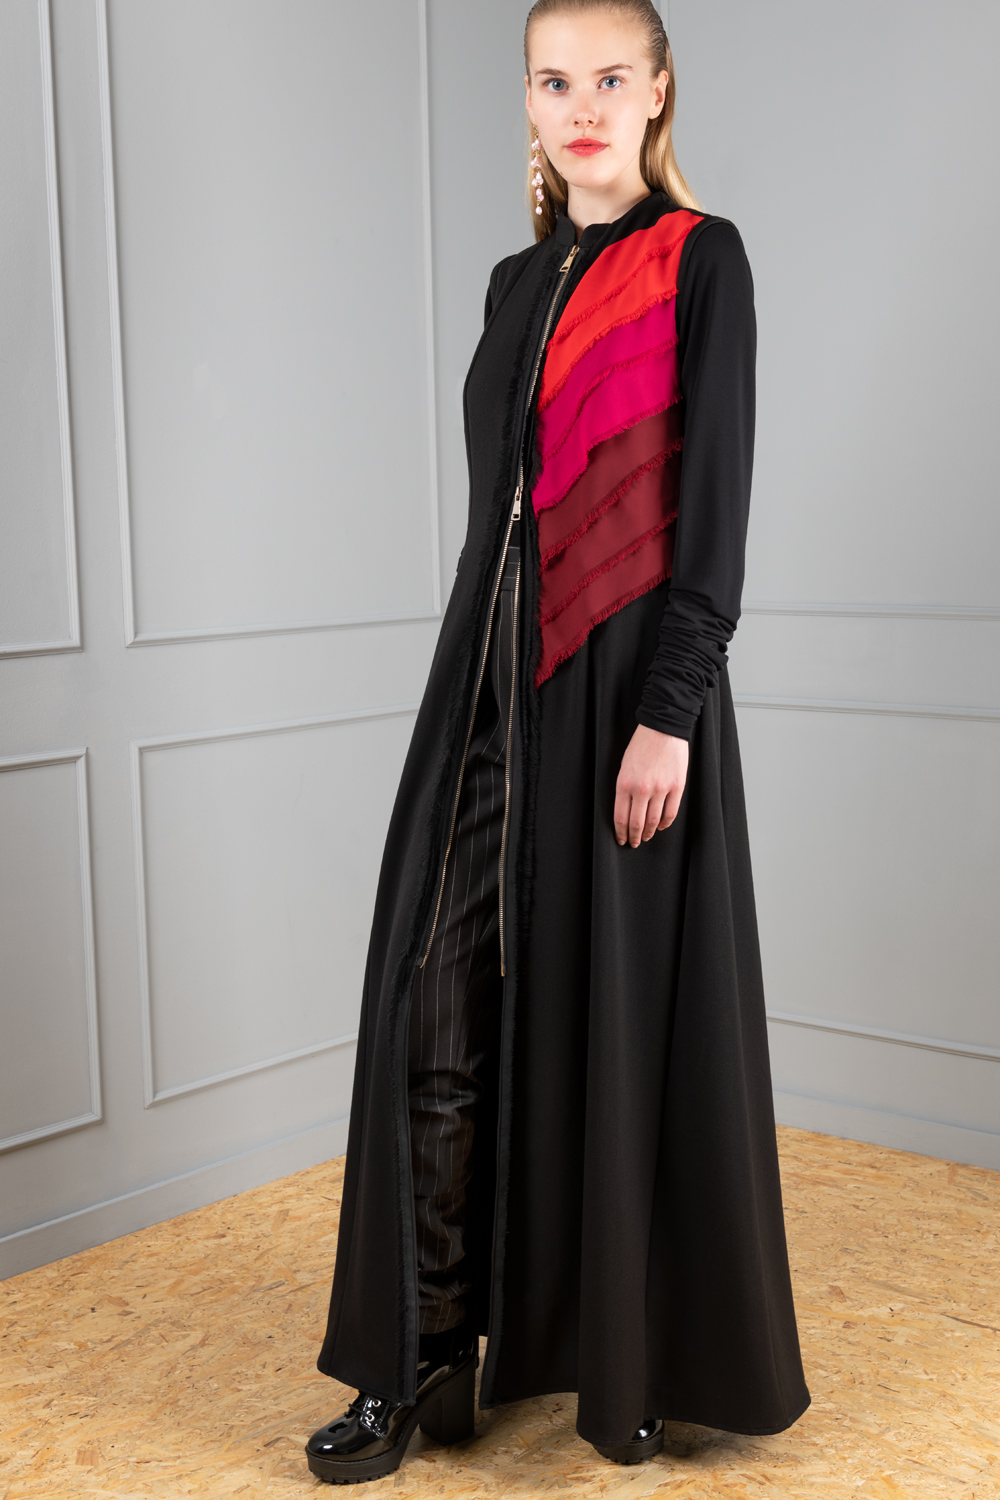 Sleeveless black and red dress | Haruco-vert